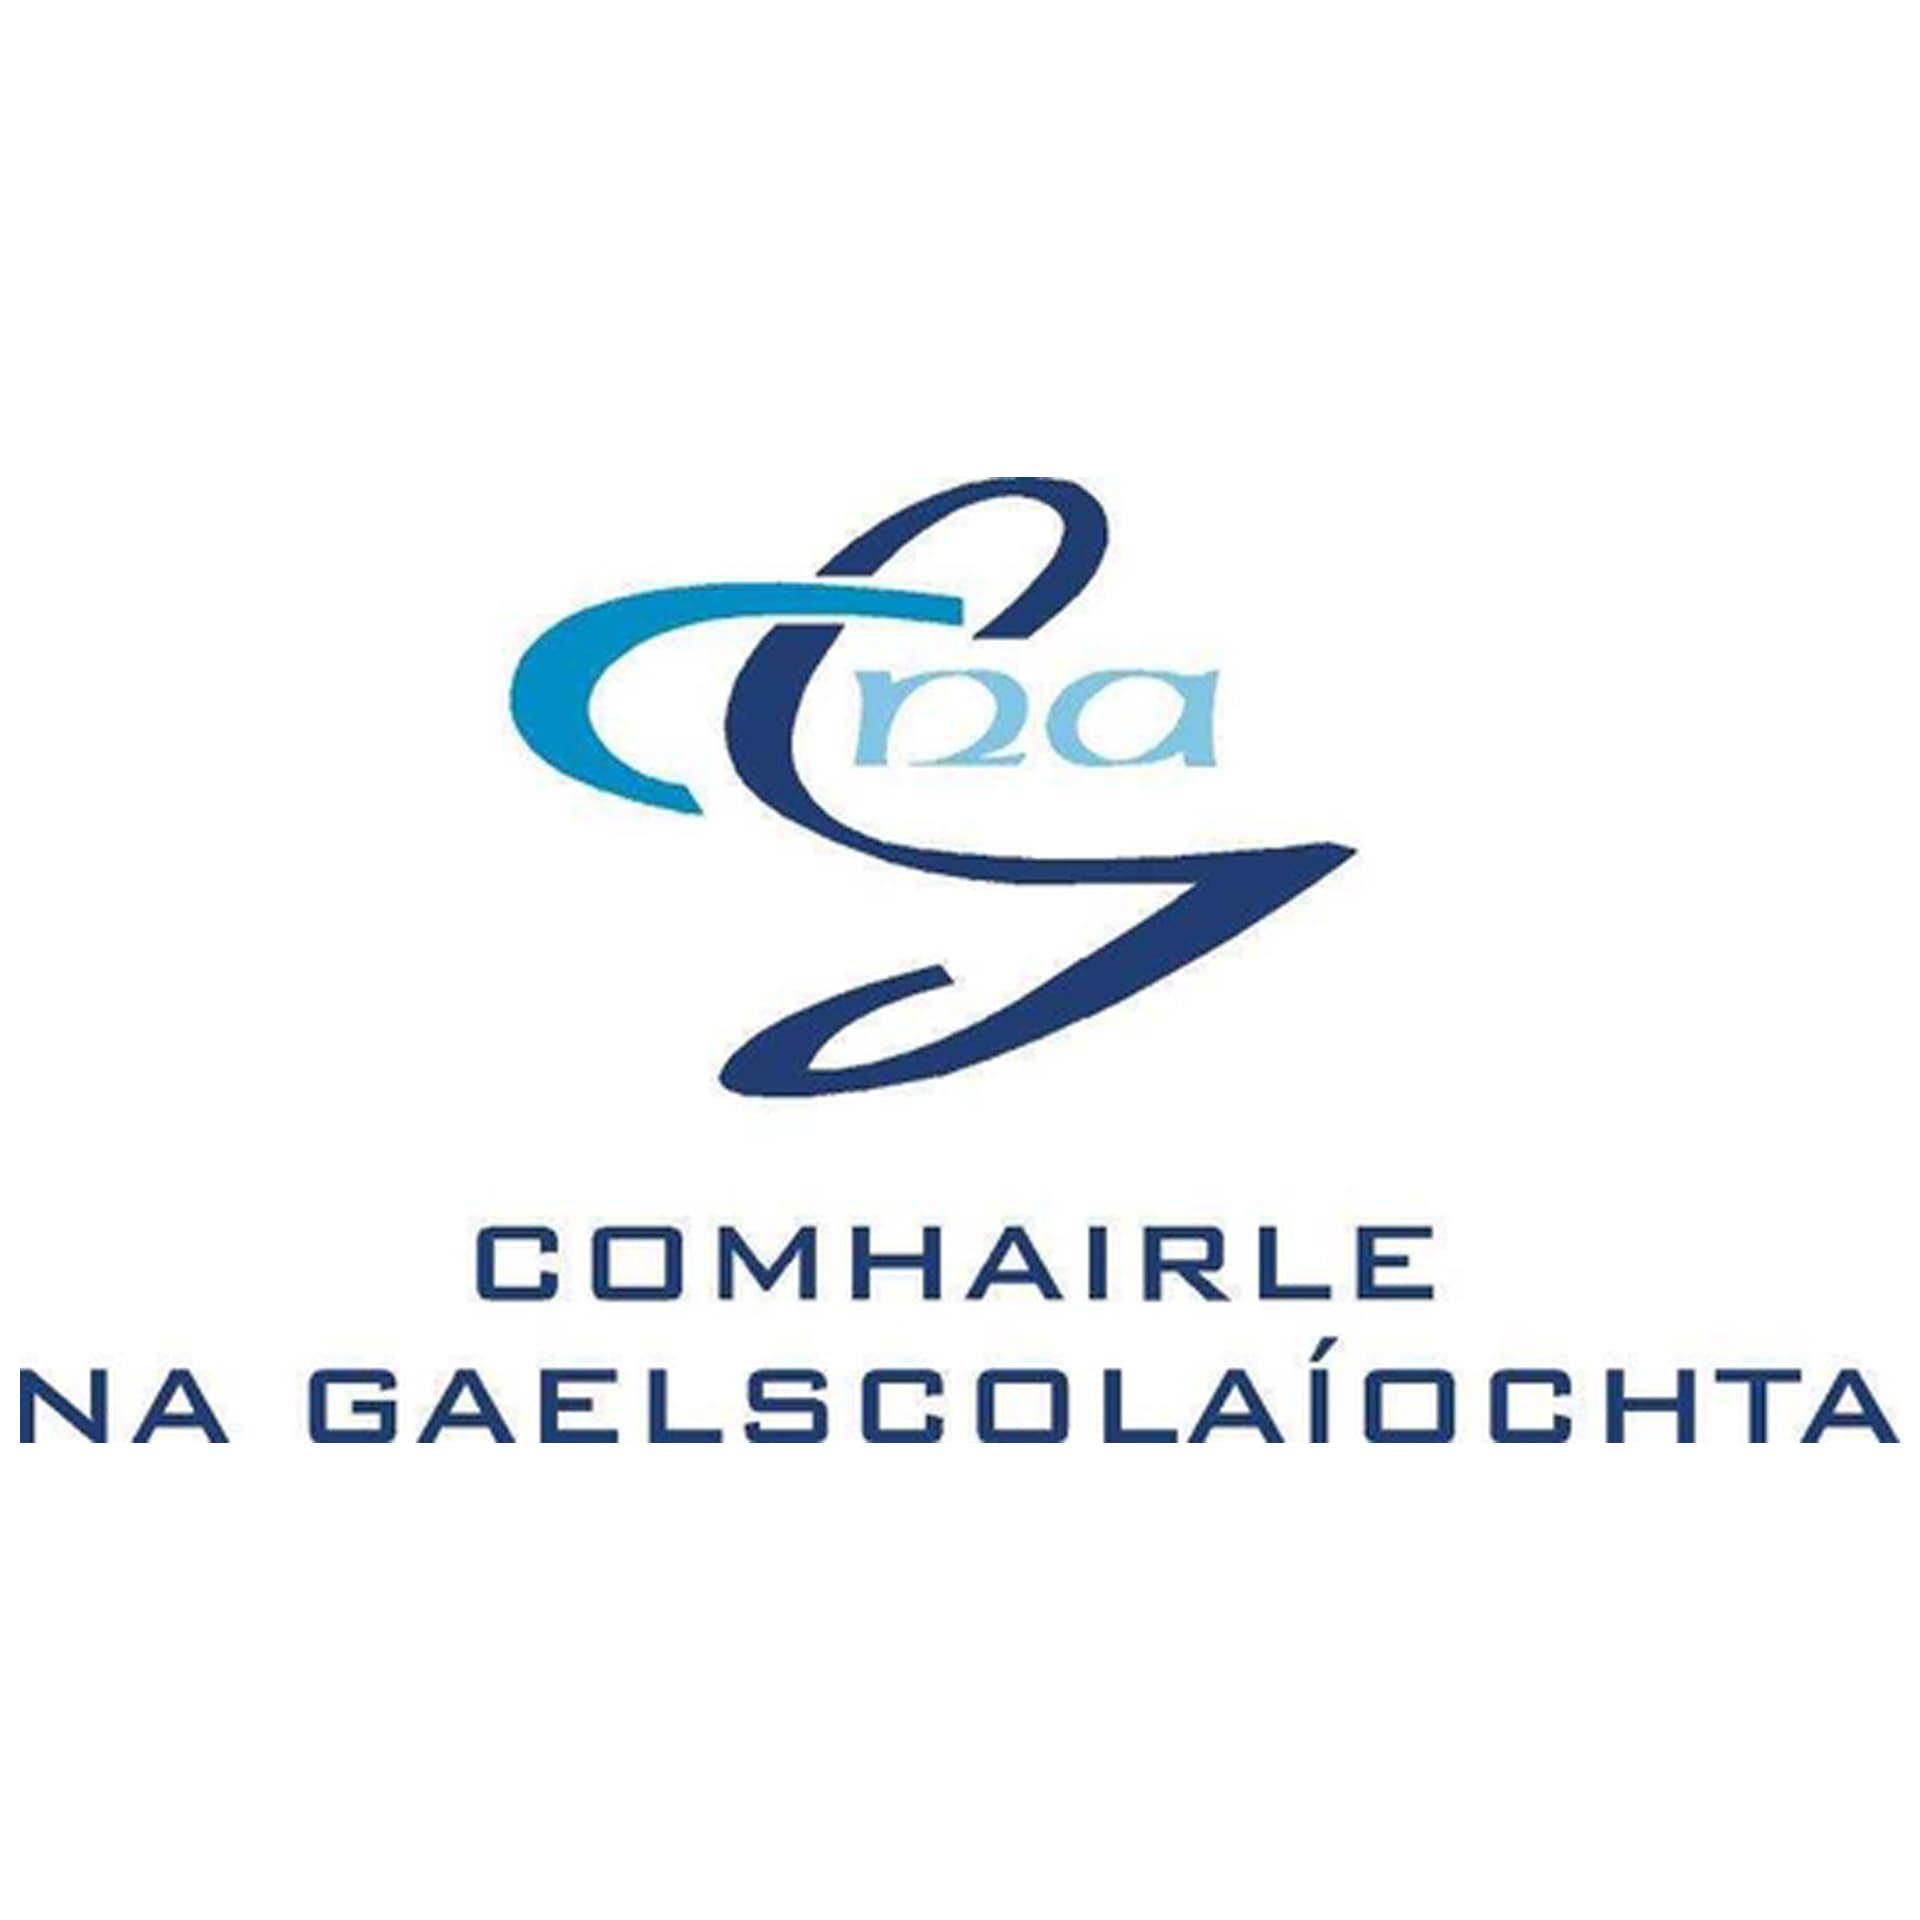 Comhairle na Gaelscolaíochta